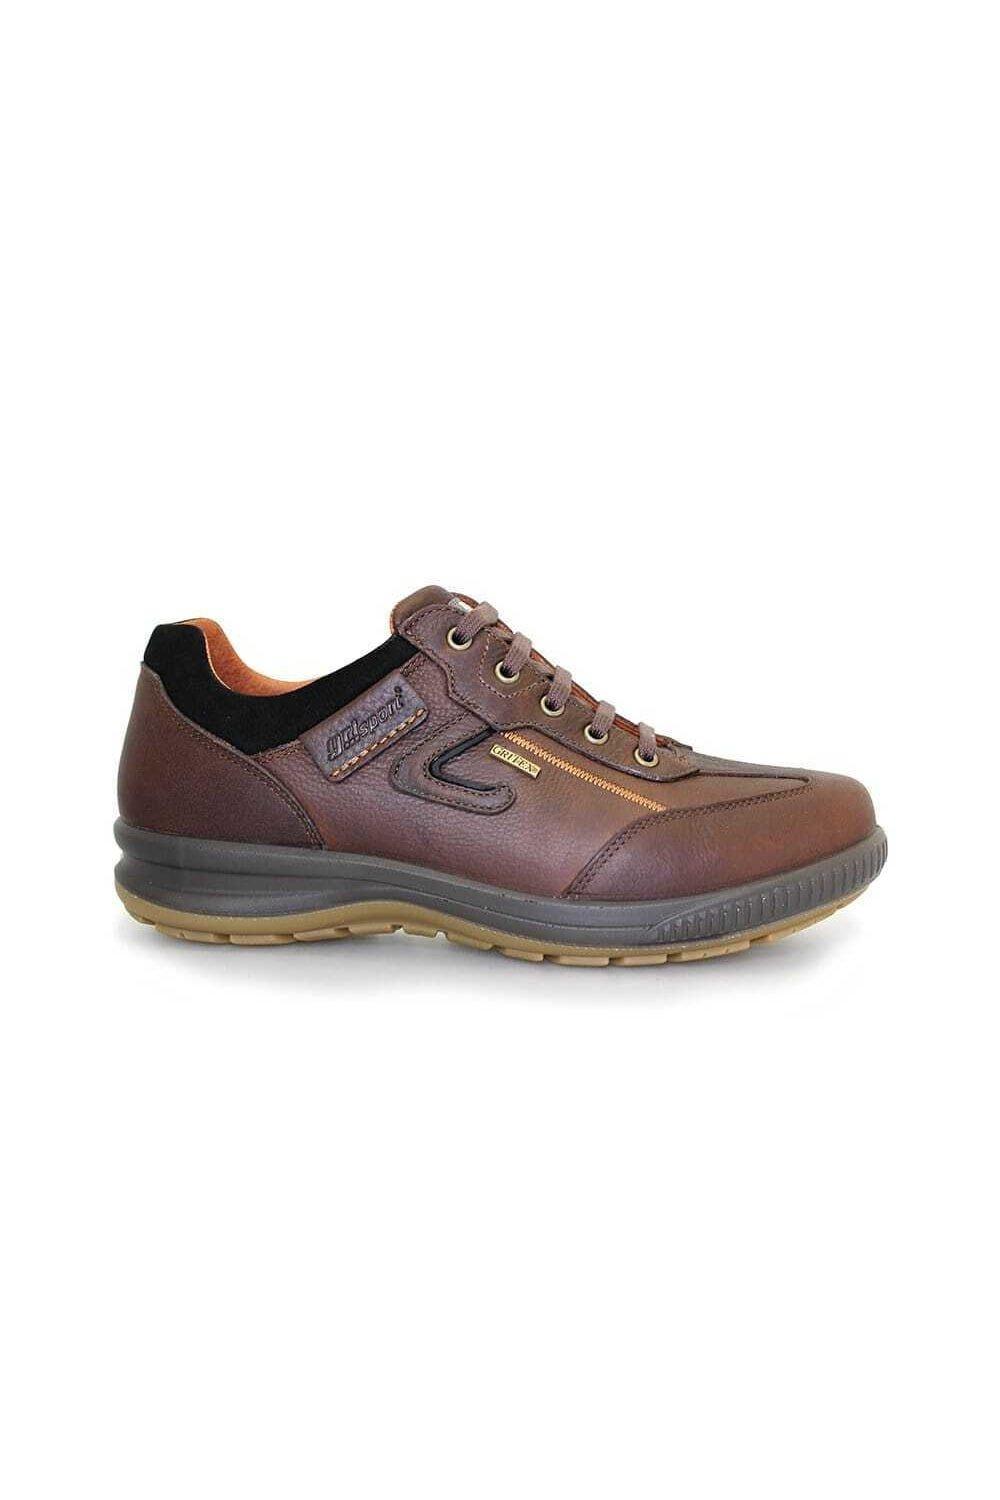 Кожаные прогулочные туфли Arran Grisport, коричневый